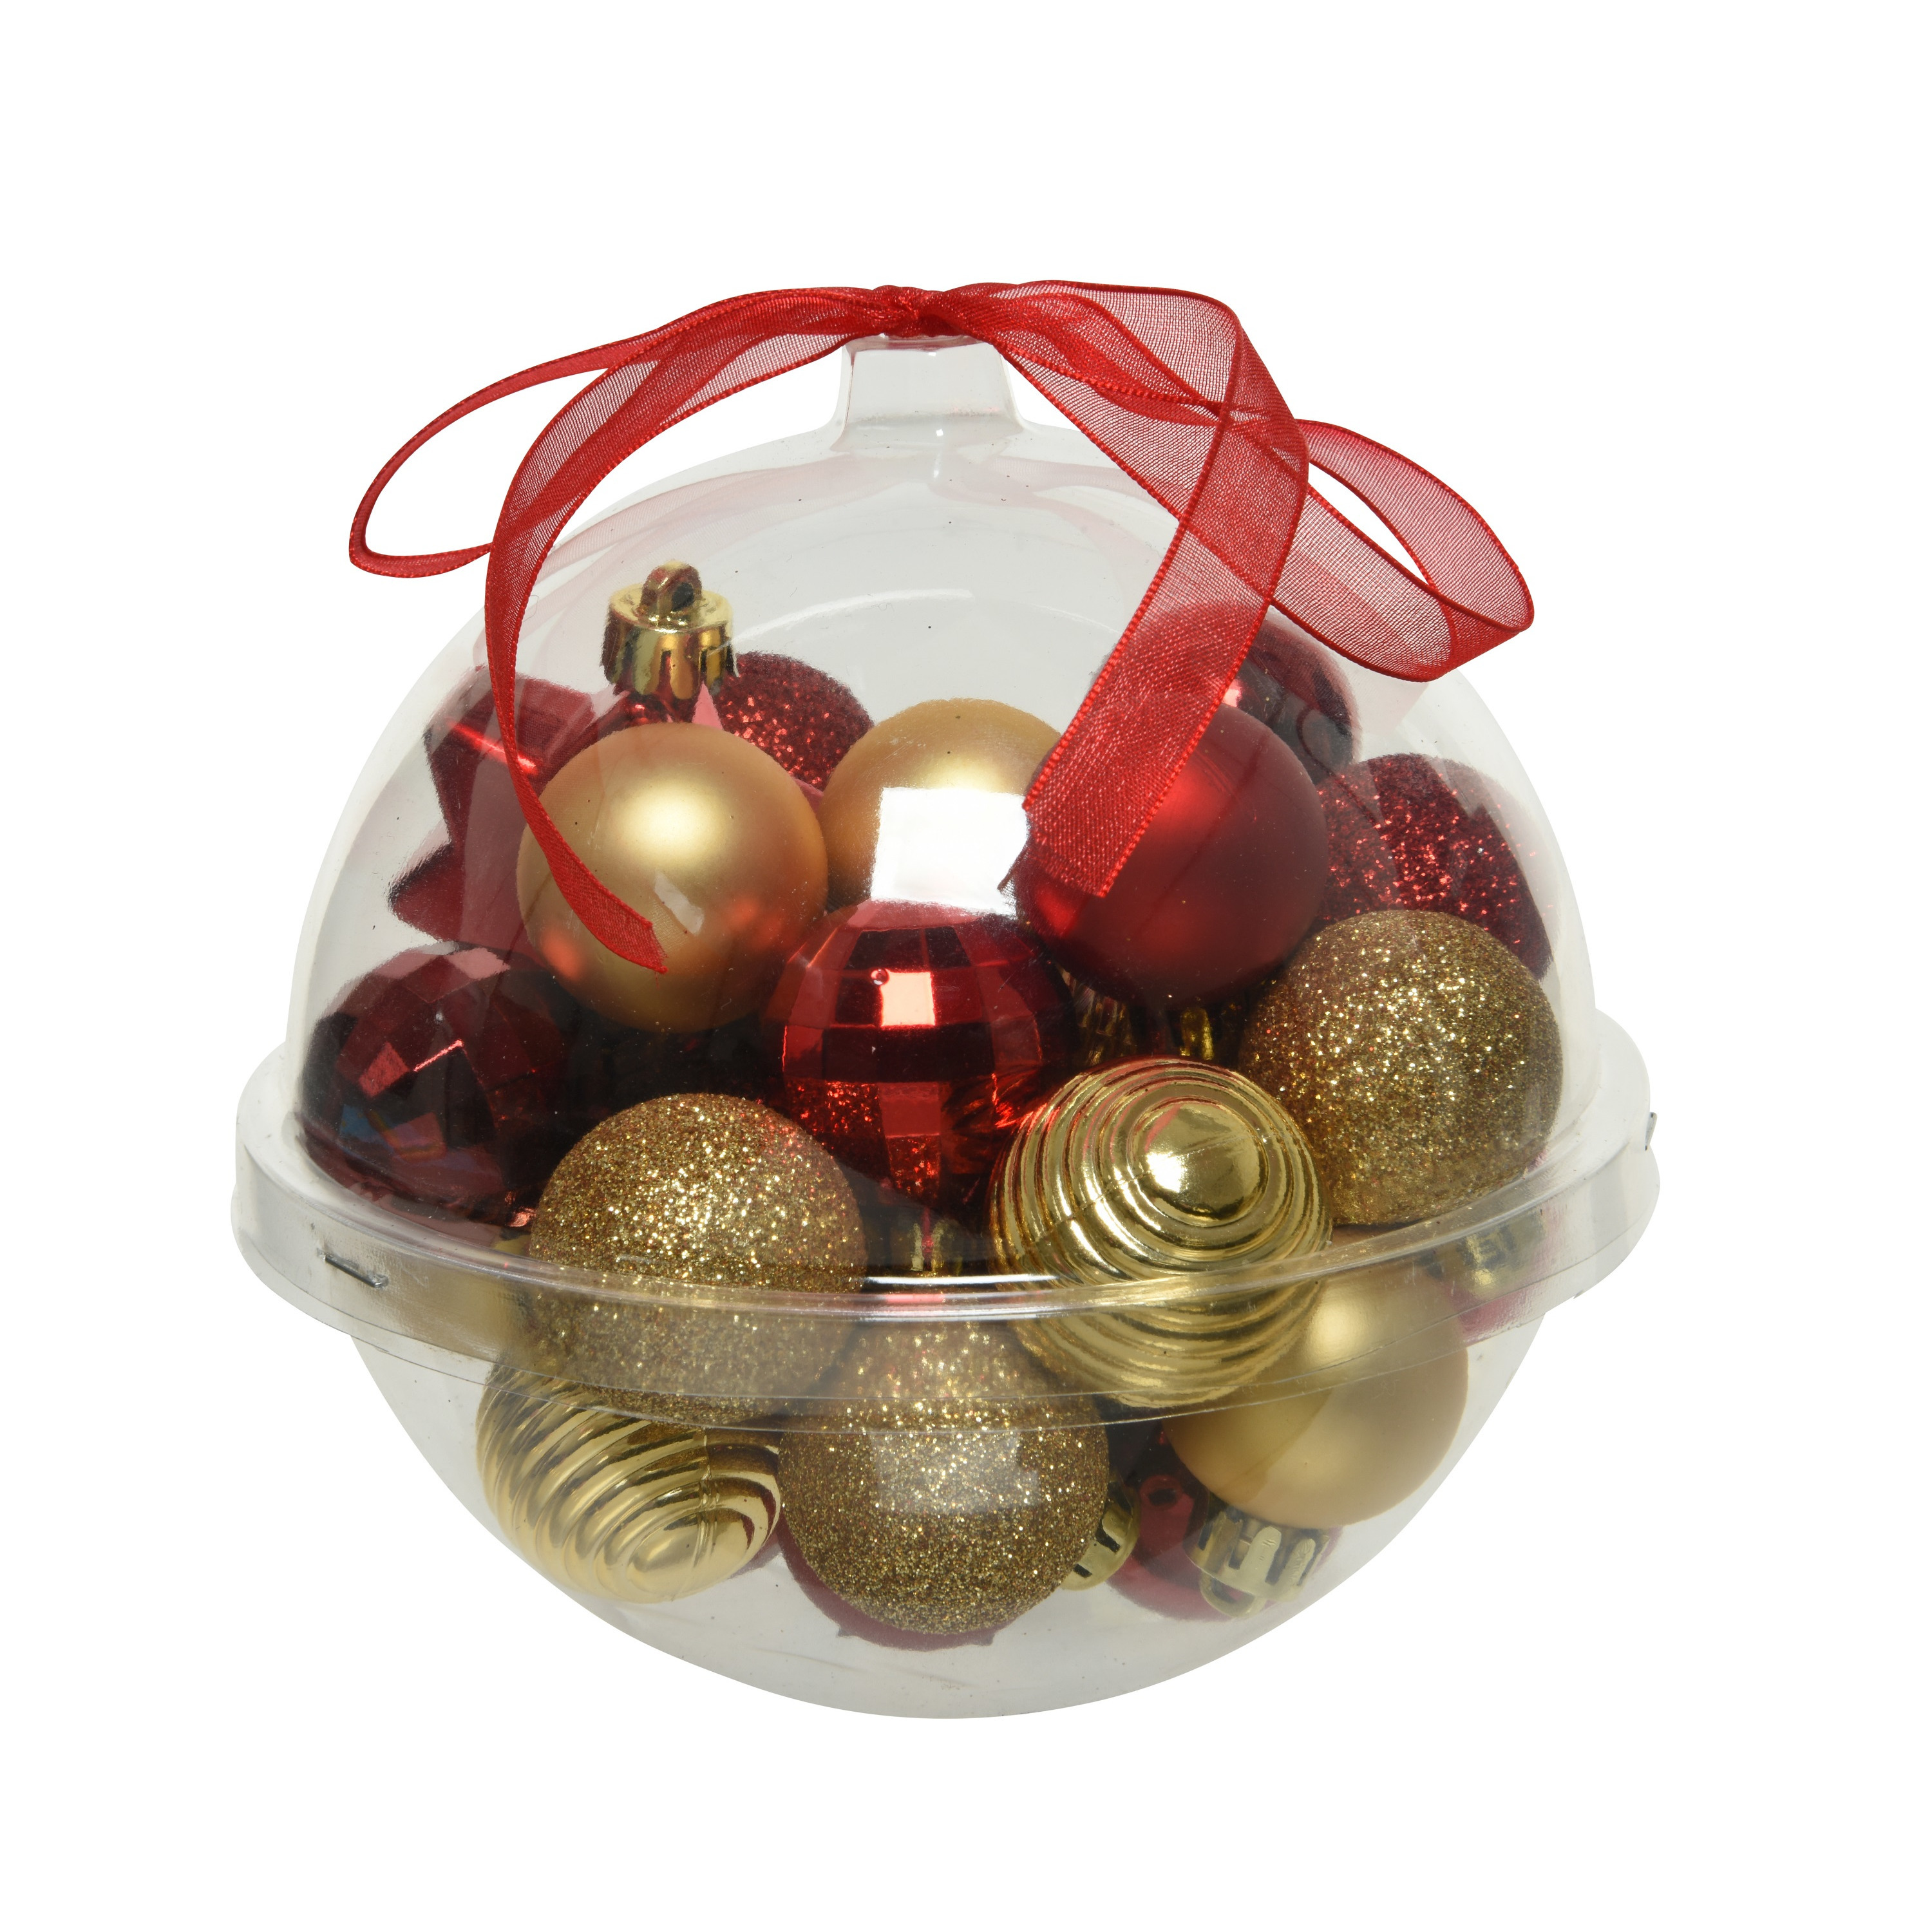 30x stuks kleine kunststof kerstballen rood-donkerrood-goud 3 cm